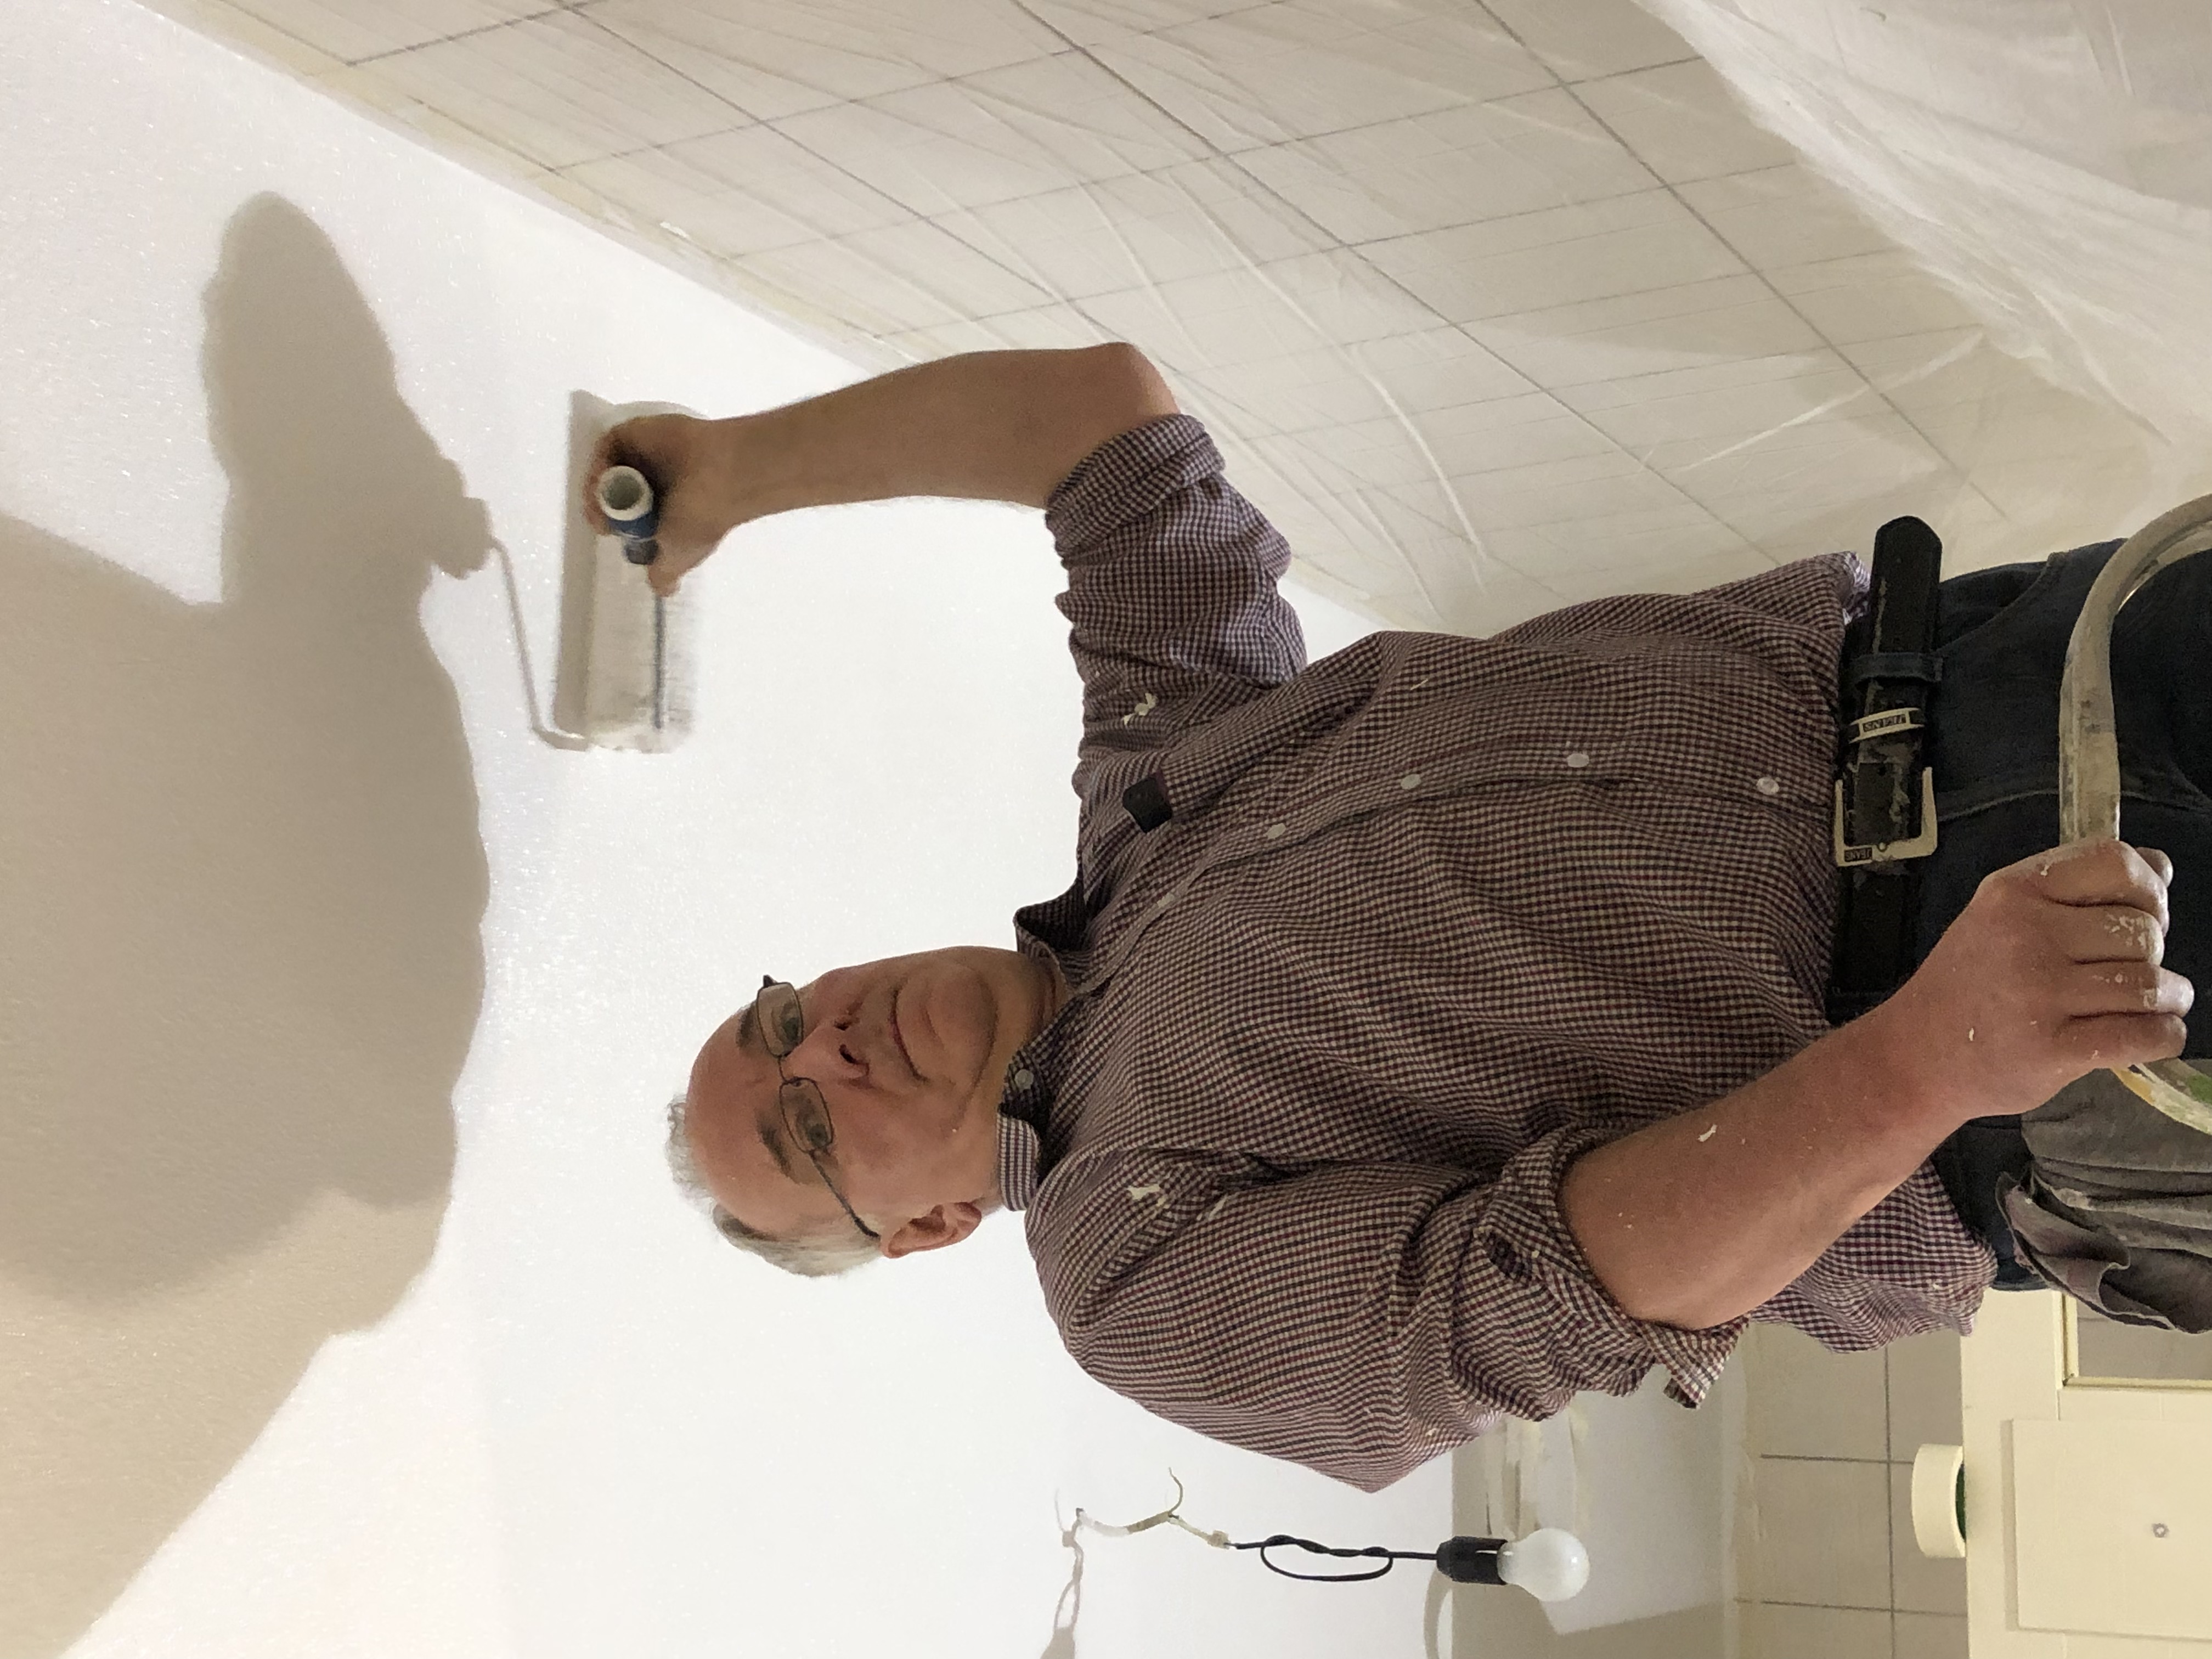 Sanierung WC-Anlagen&Garderobe im SH-01.02-02.02.2019  (10)